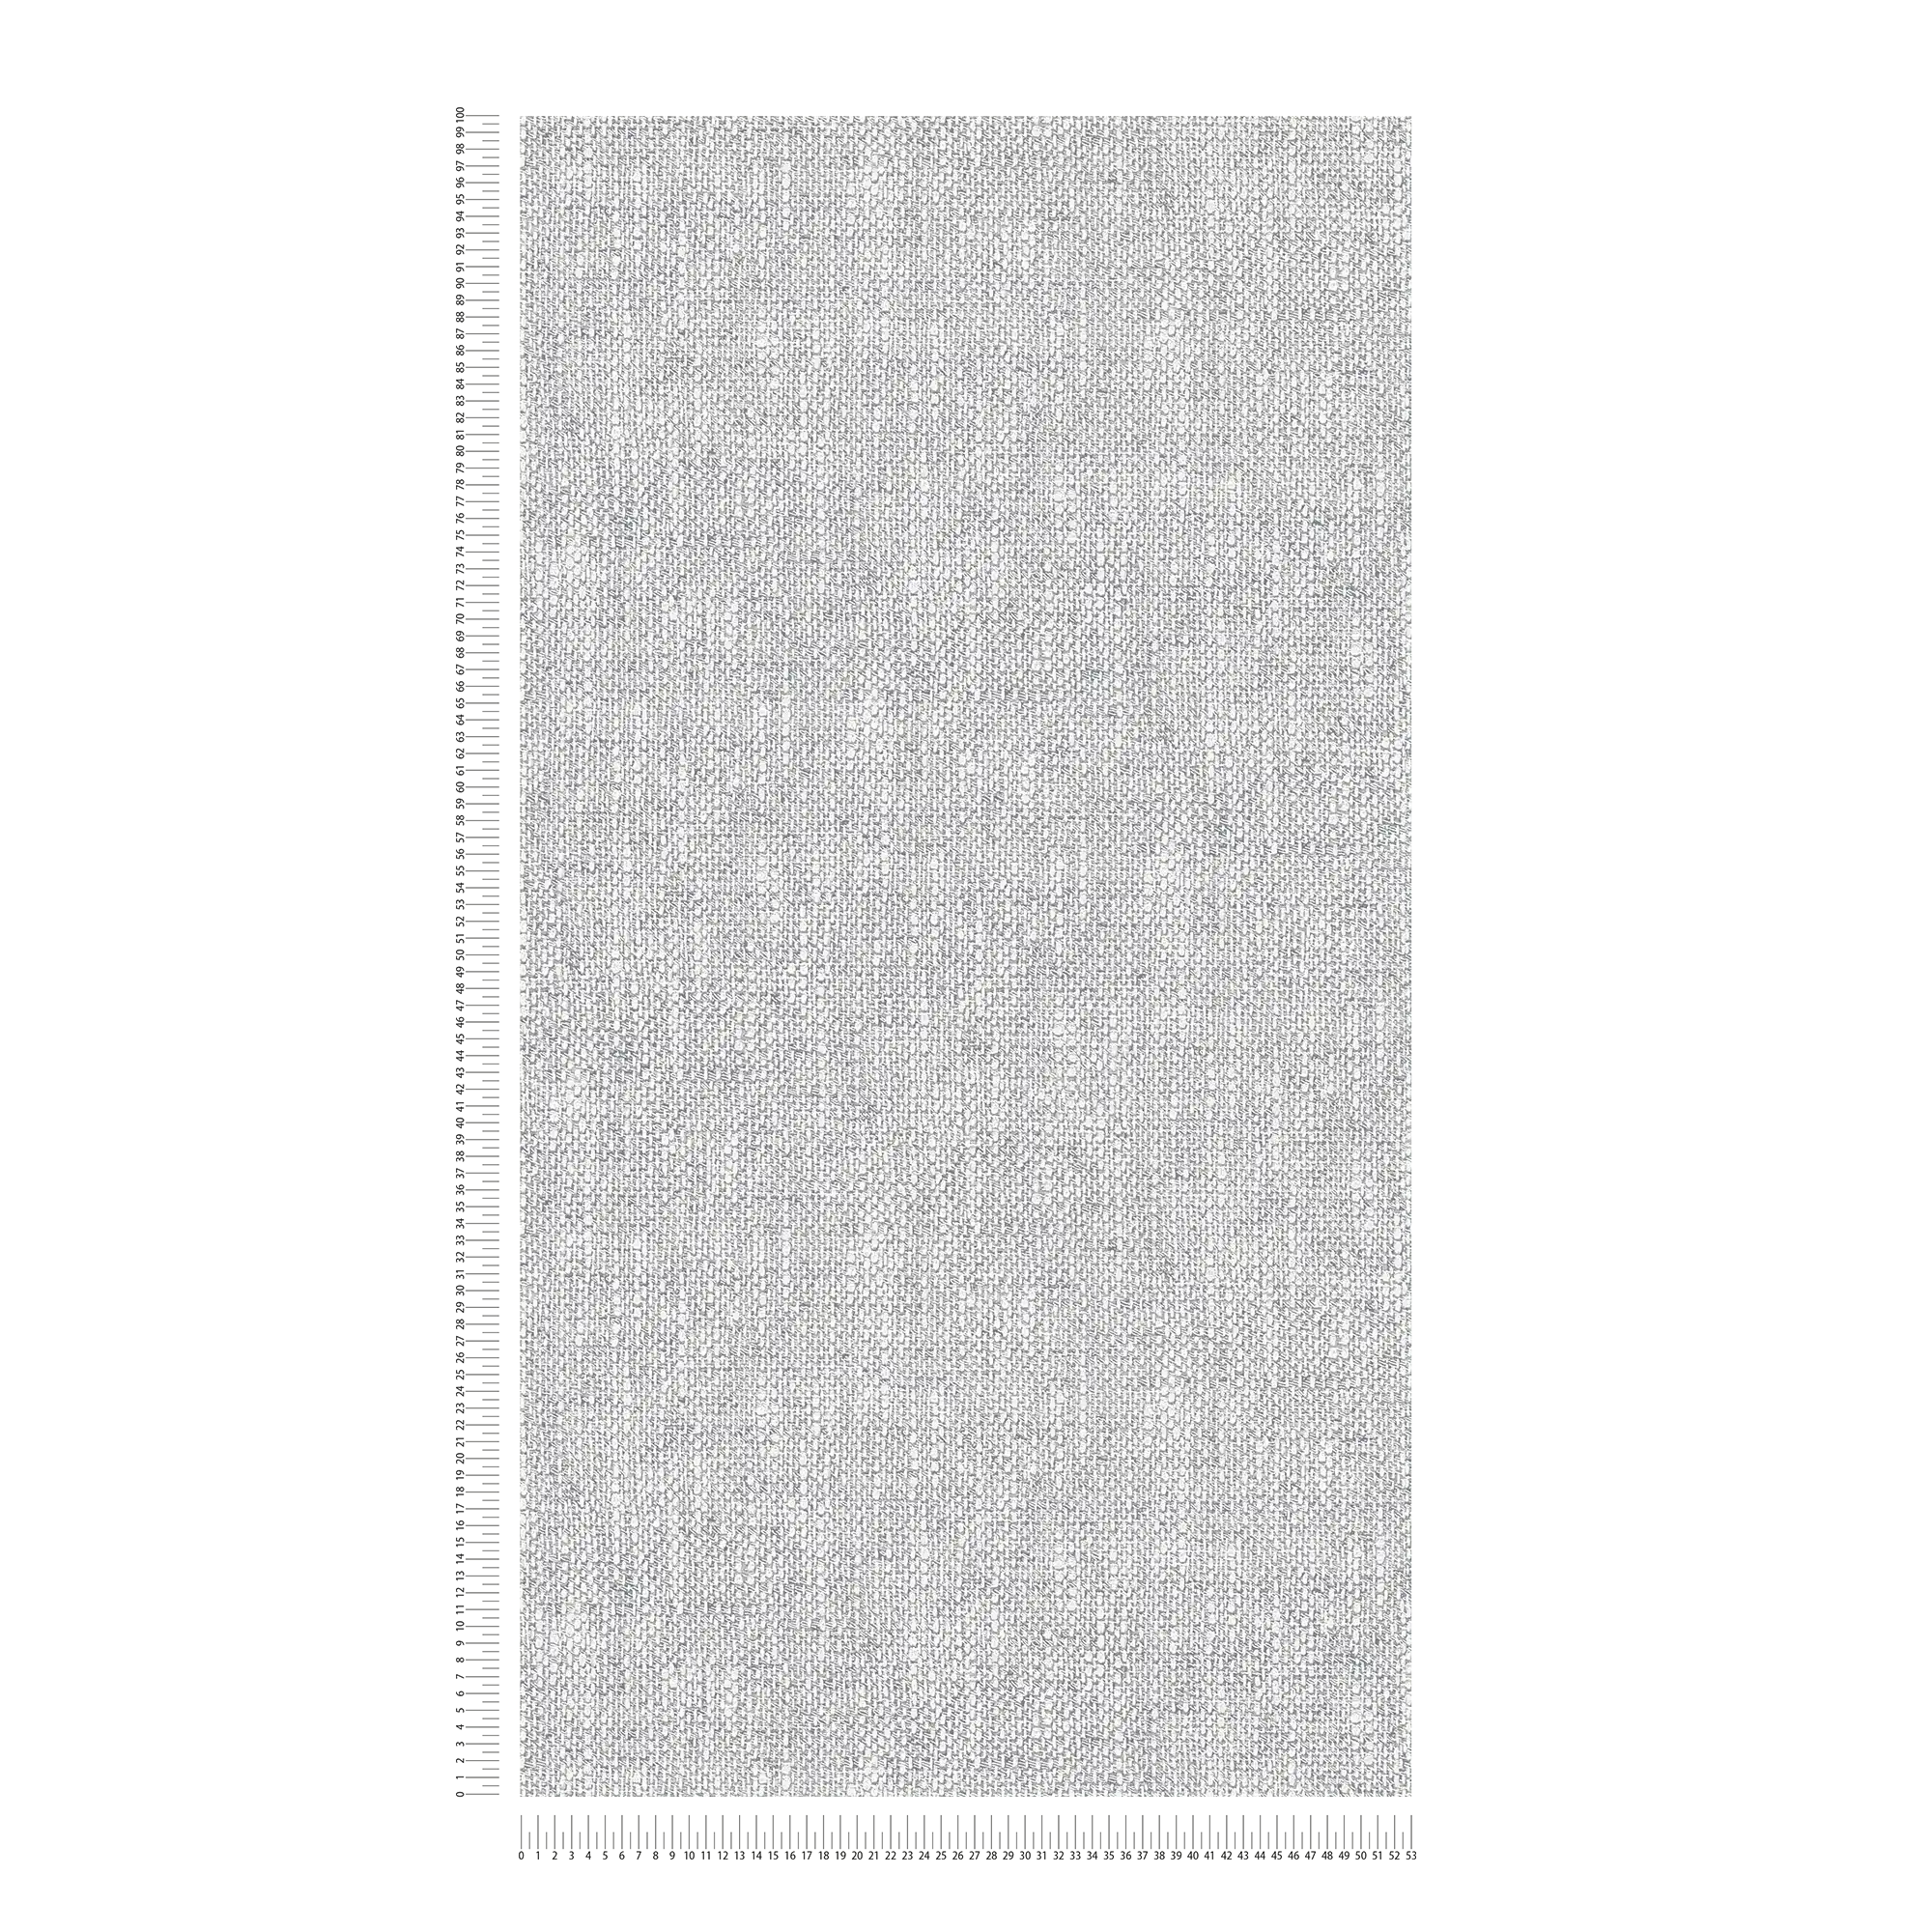             Carta da parati in tessuto non tessuto con aspetto realistico del tessuto - grigio, bianco
        